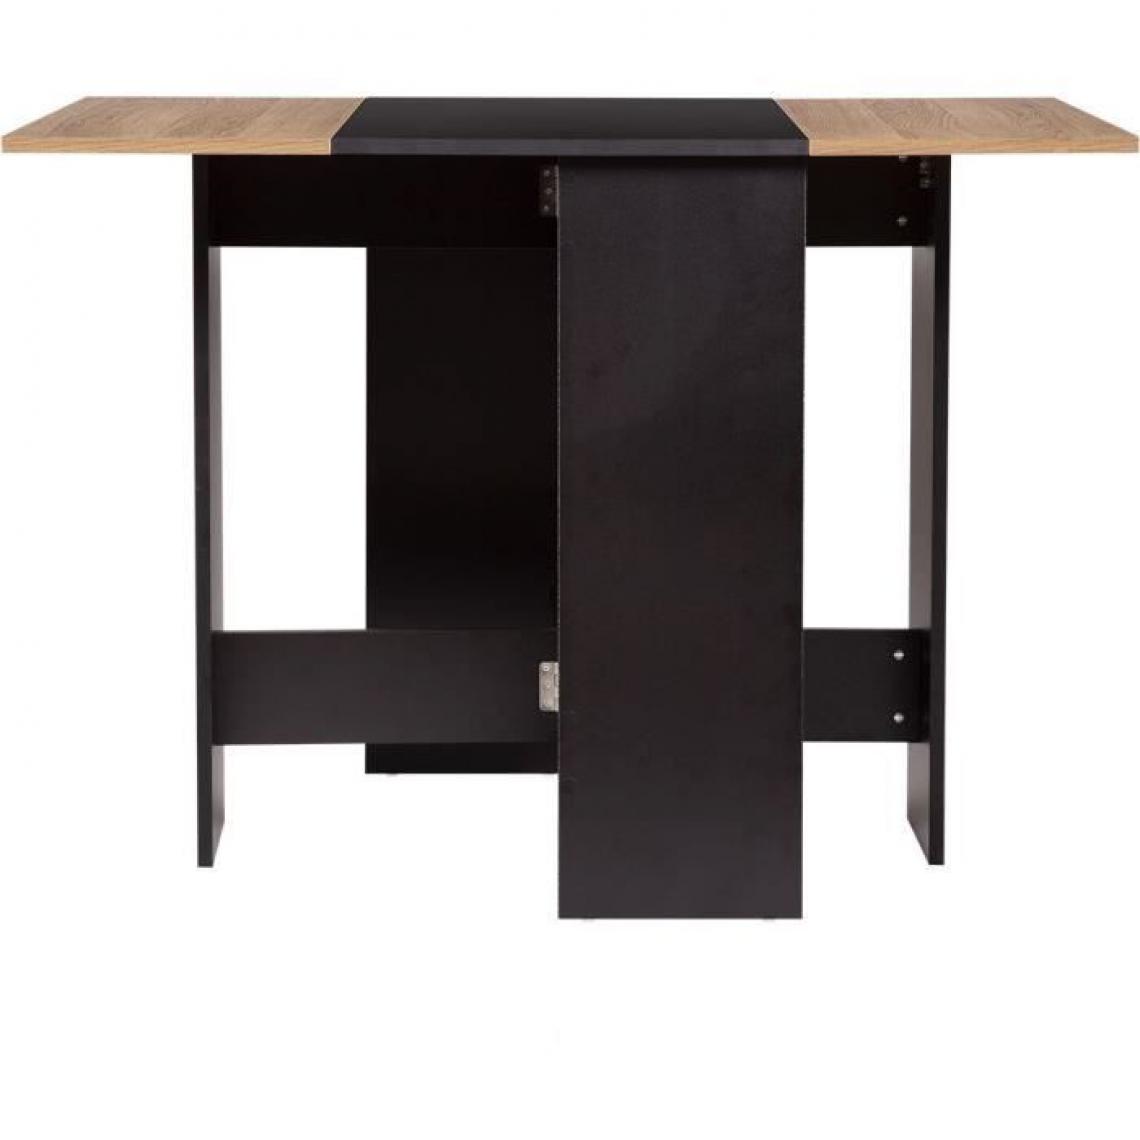 Cstore - Table à manger pliable - En panneaux de particules - Essentiel - VARDA - L 104 x P 76 x H 74 cm - Noir et chêne - Tables à manger